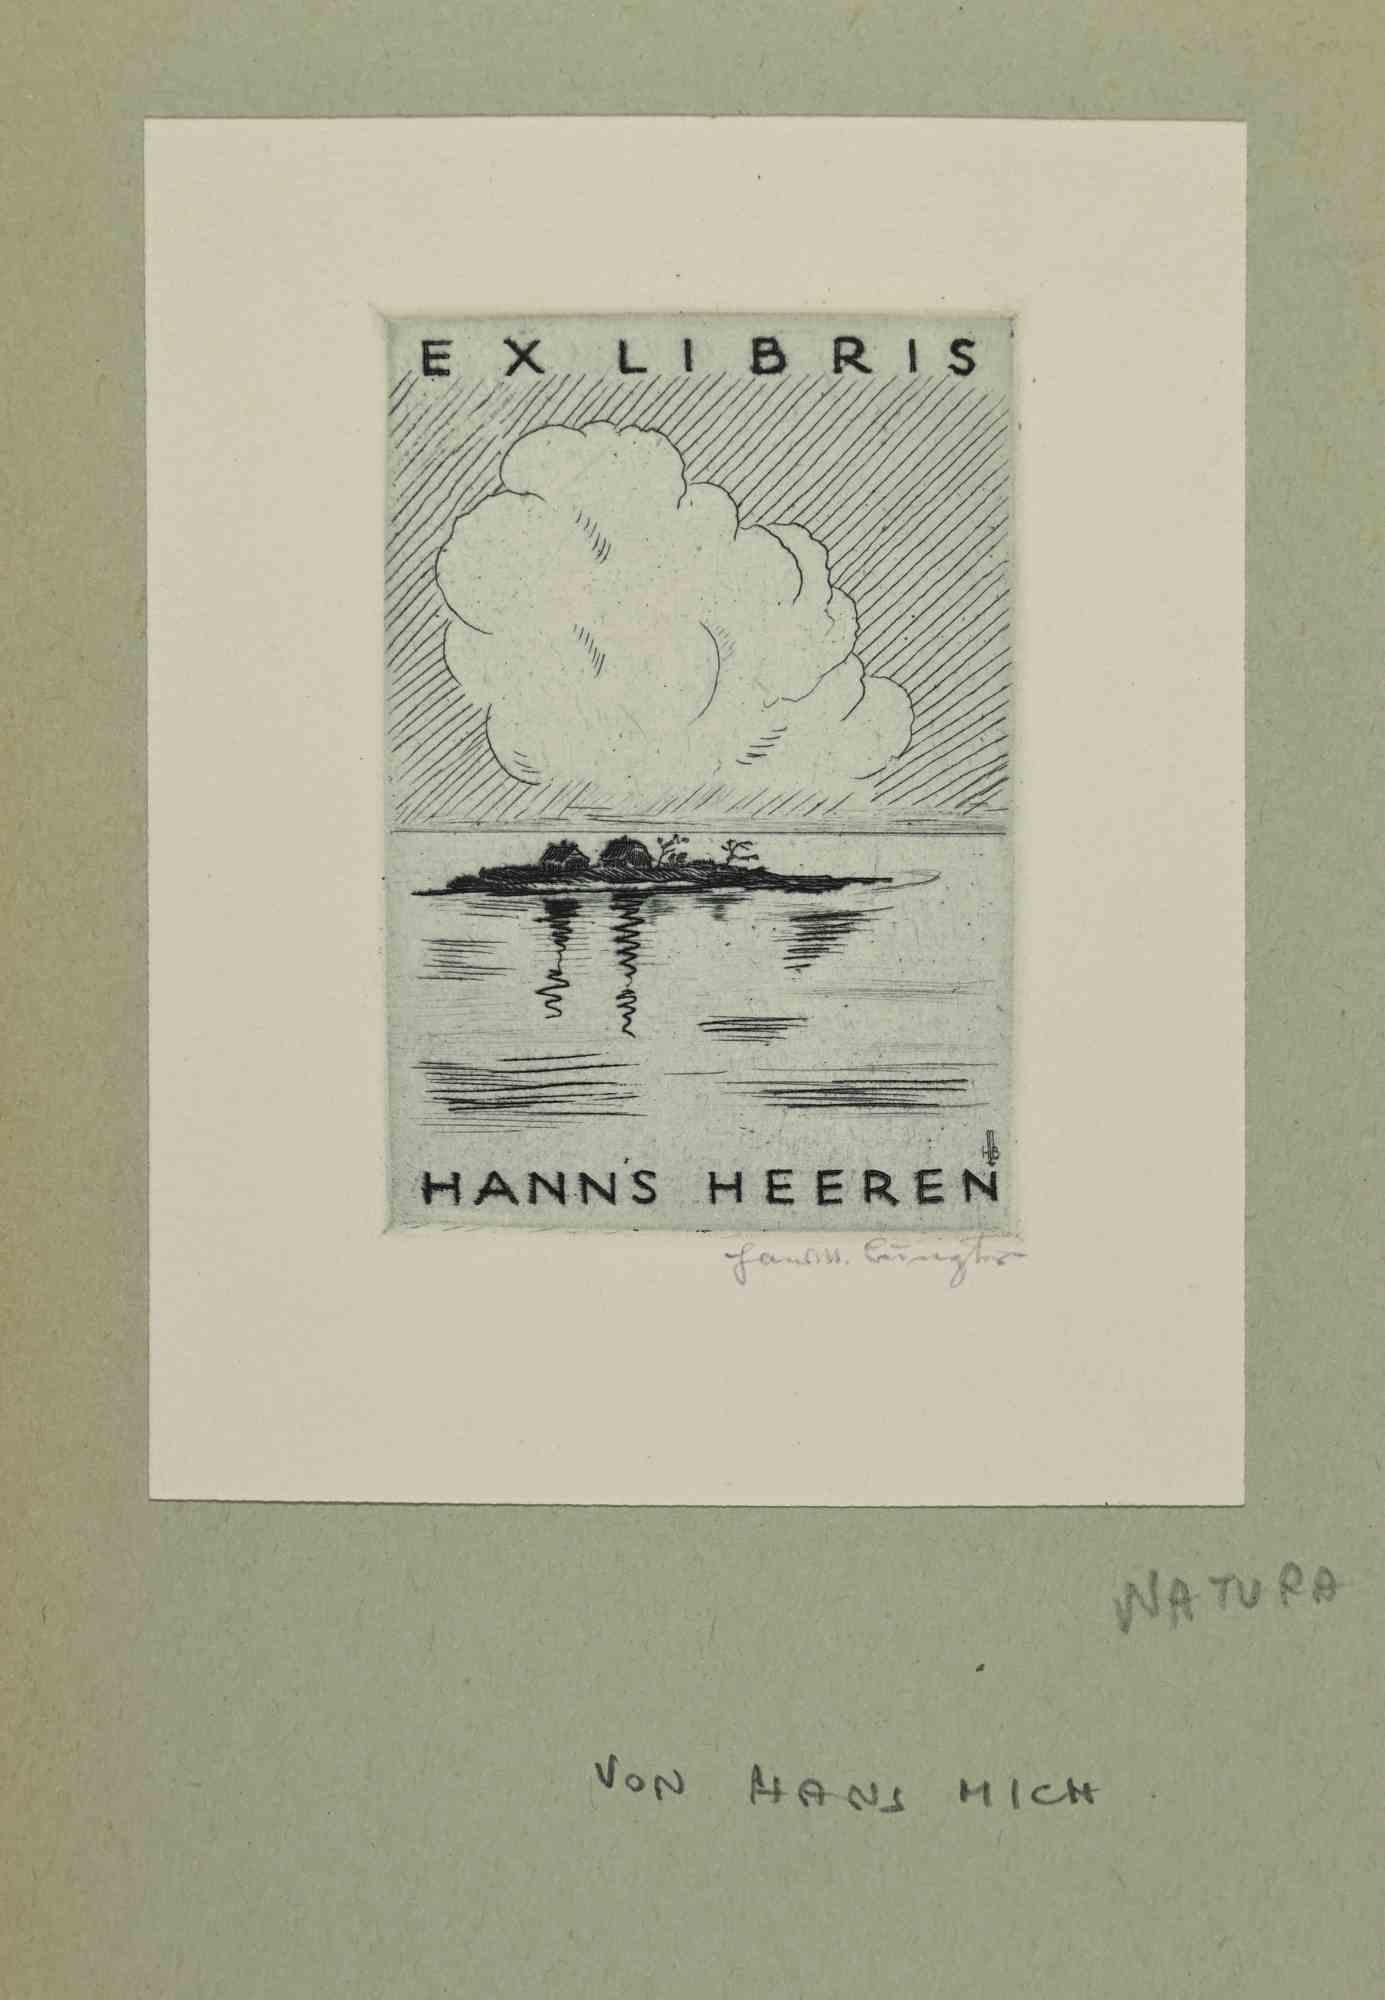 Ex Libris - Hanns Heeren ist ein Kunstwerk aus dem frühen 20. Jahrhundert von Hans Michael Bungter aus Deutschland. 

Radierung auf Elfenbeinpapier.  Handsigniert in der rechten Ecke. Signiert auf der Platte auf der Rückseite. Das Werk ist auf